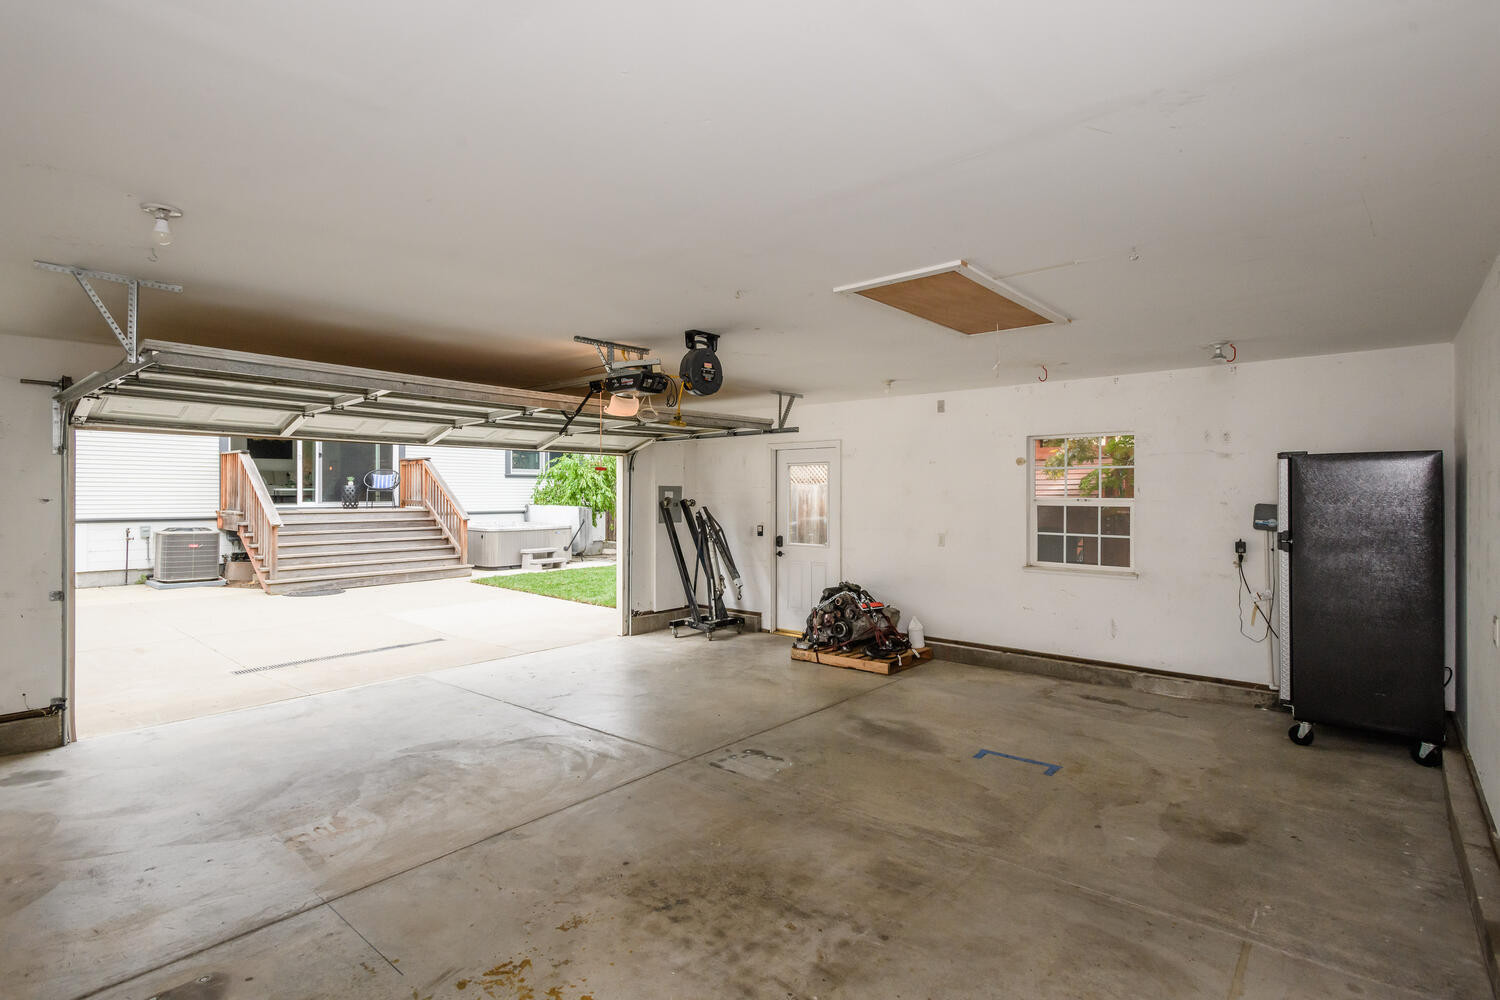 722 Crossway Road Garage Interior in Burlingame Terrace Area in Burlingame.